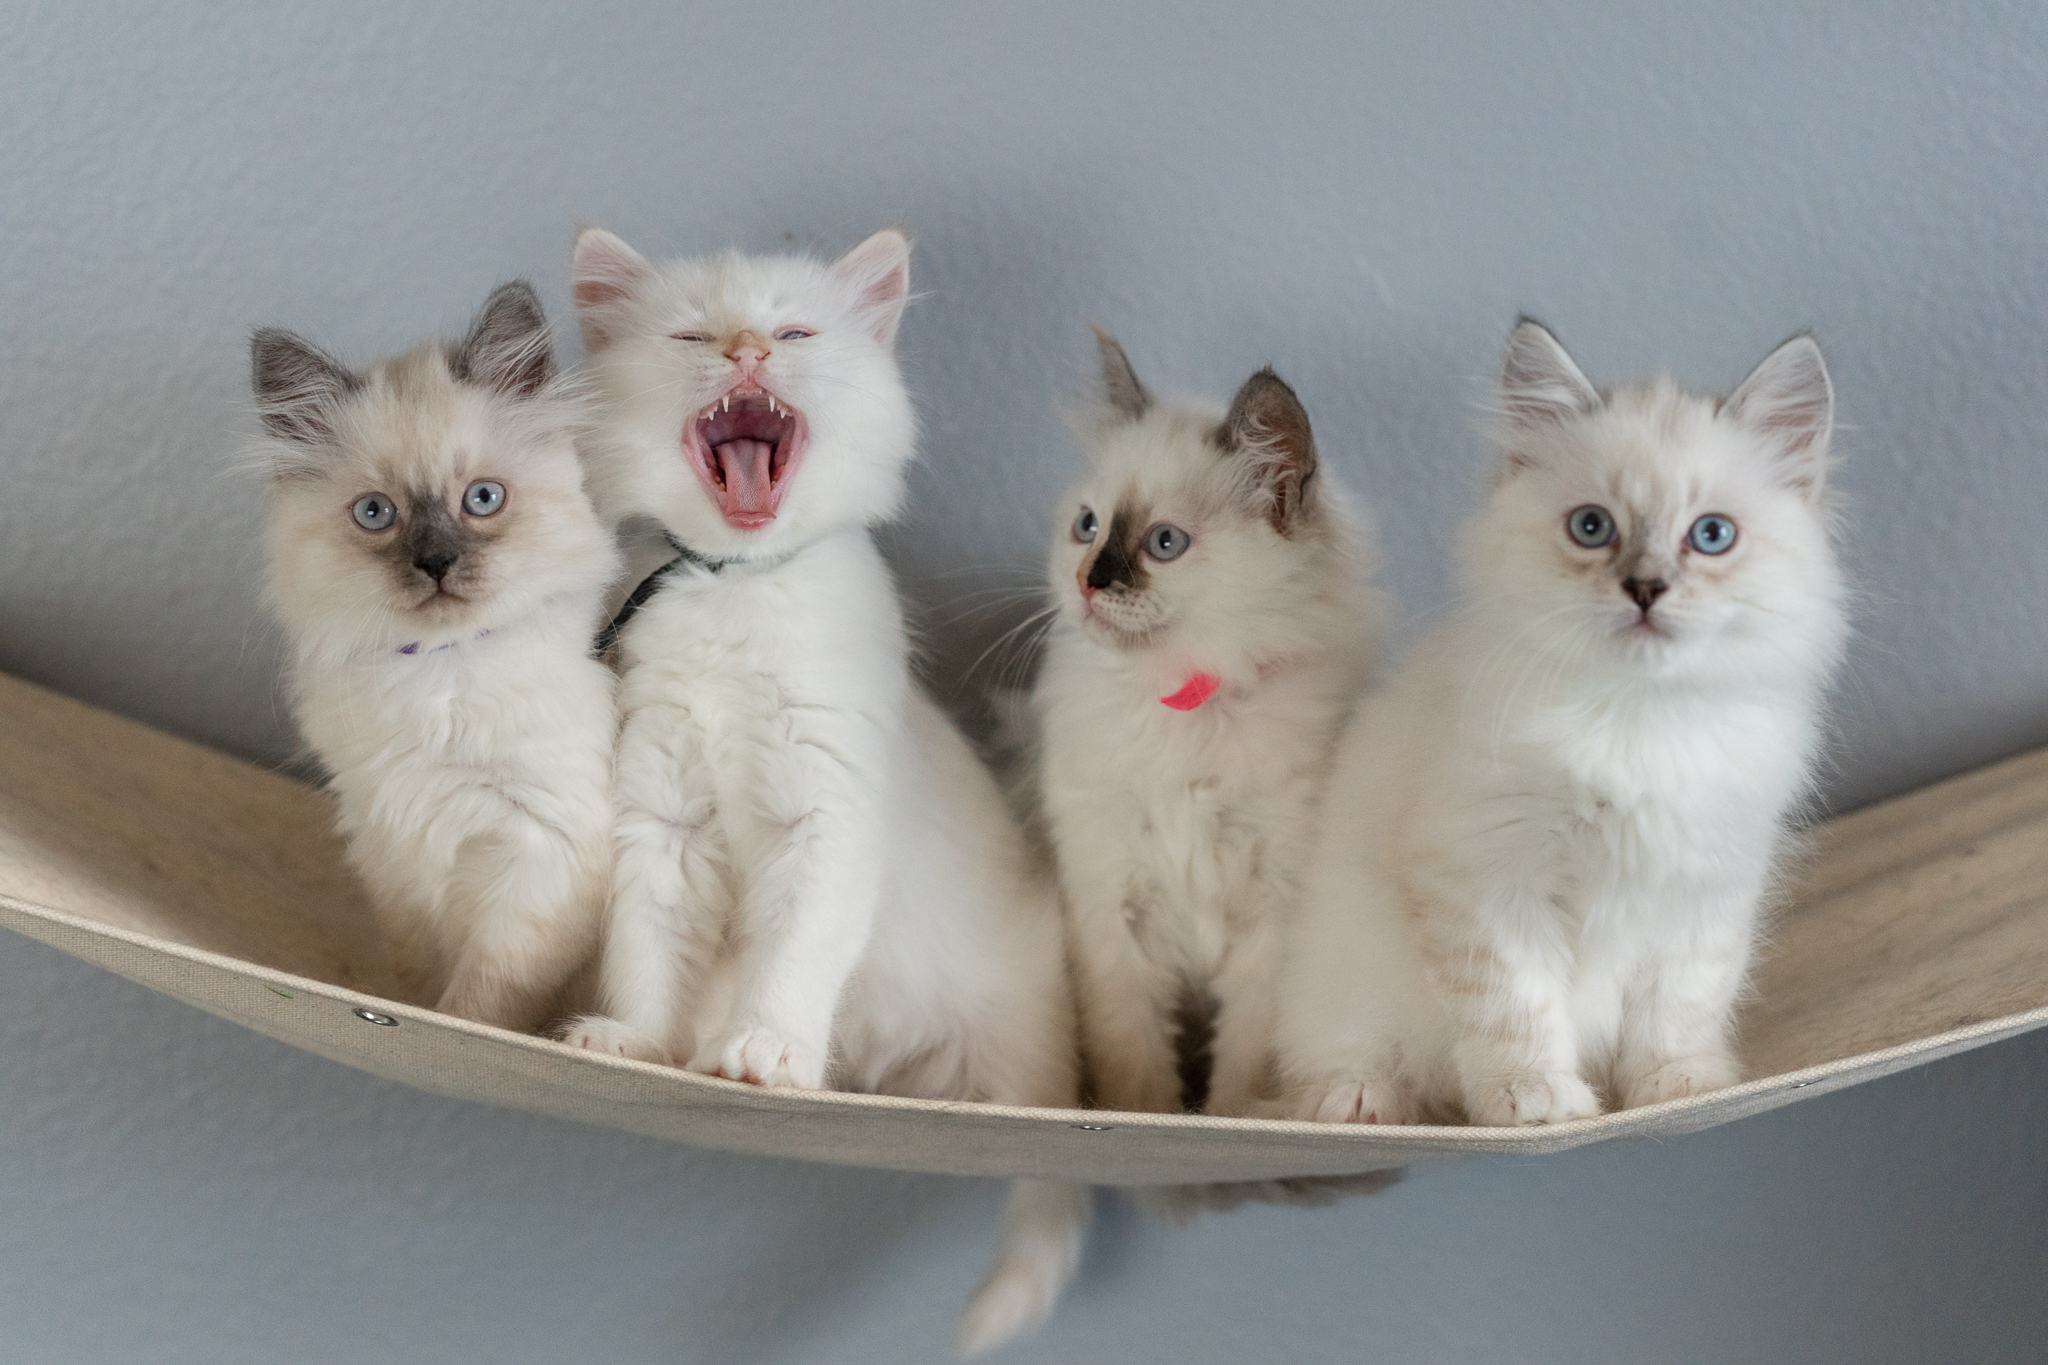 colorado siberian cats, colorado siberian kittens, siberian kittens in colorado, siberian cats in colorado, siberian kittens in denver, siberian cats in denver